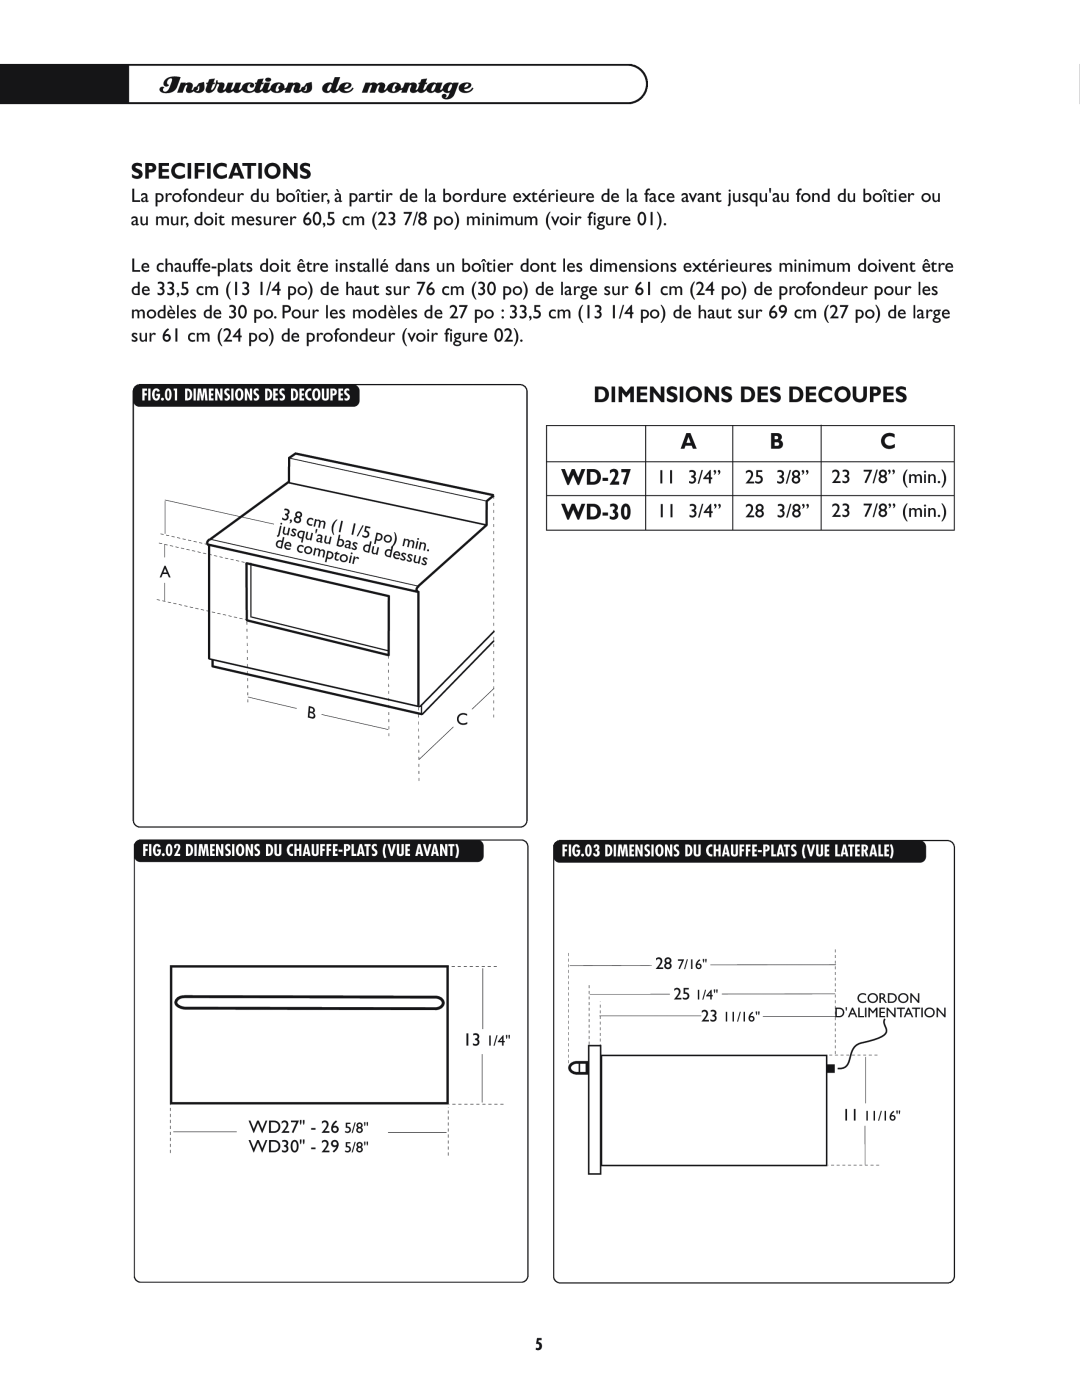 DCS WD-30-BL manual Instructions de montage, Dimensions Des Decoupes, Specifications, WD-27 